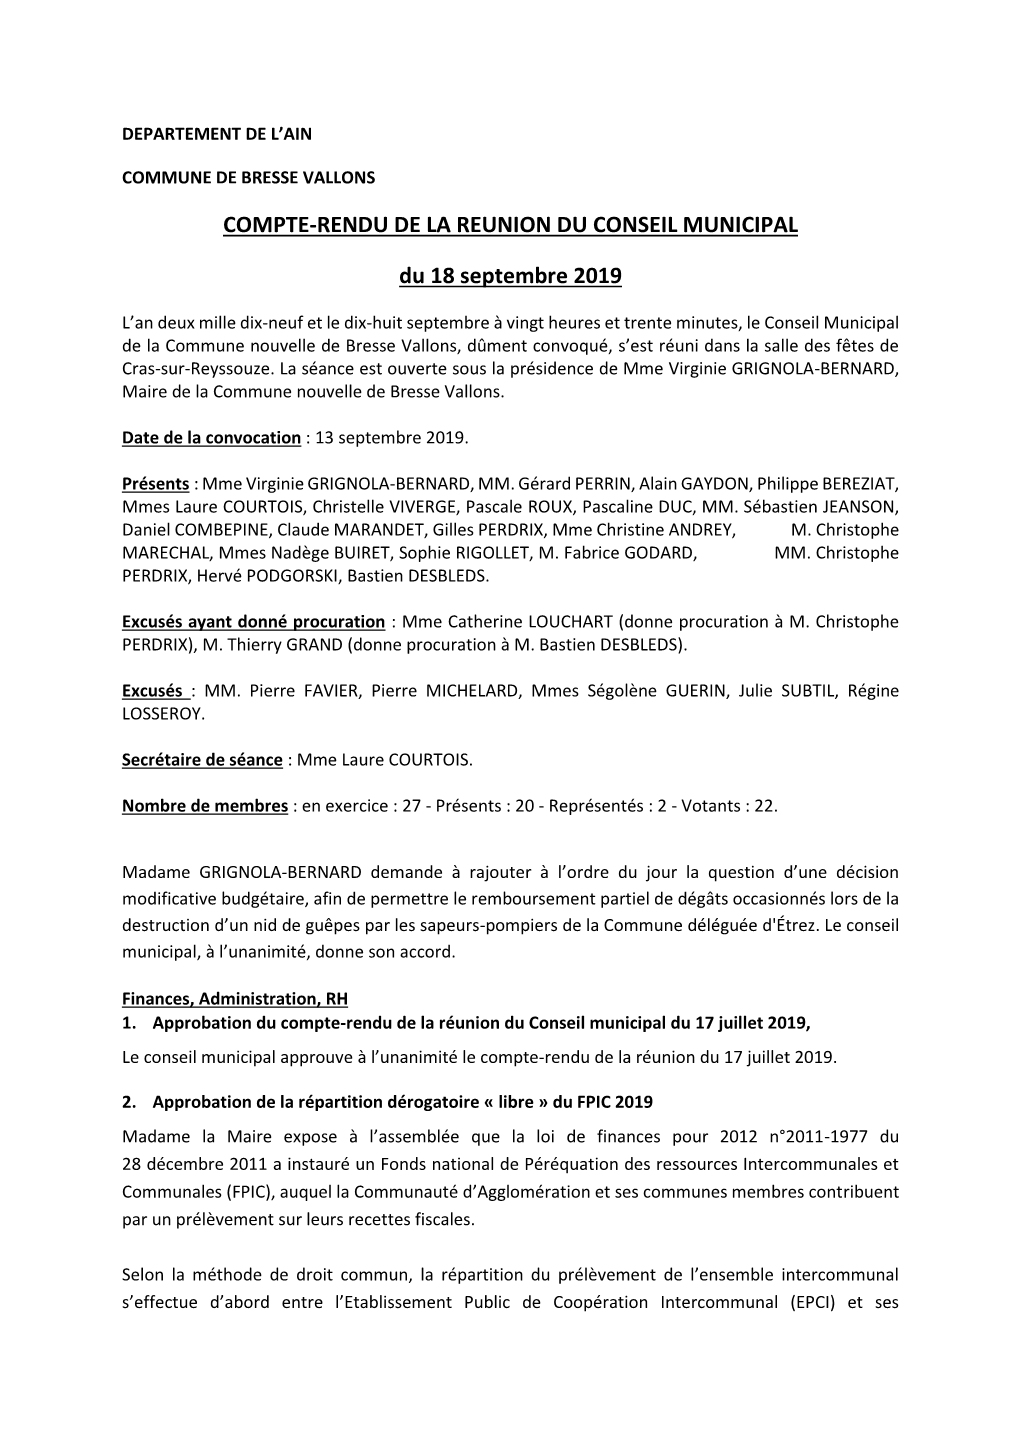 COMPTE-RENDU DE LA REUNION DU CONSEIL MUNICIPAL Du 18 Septembre 2019